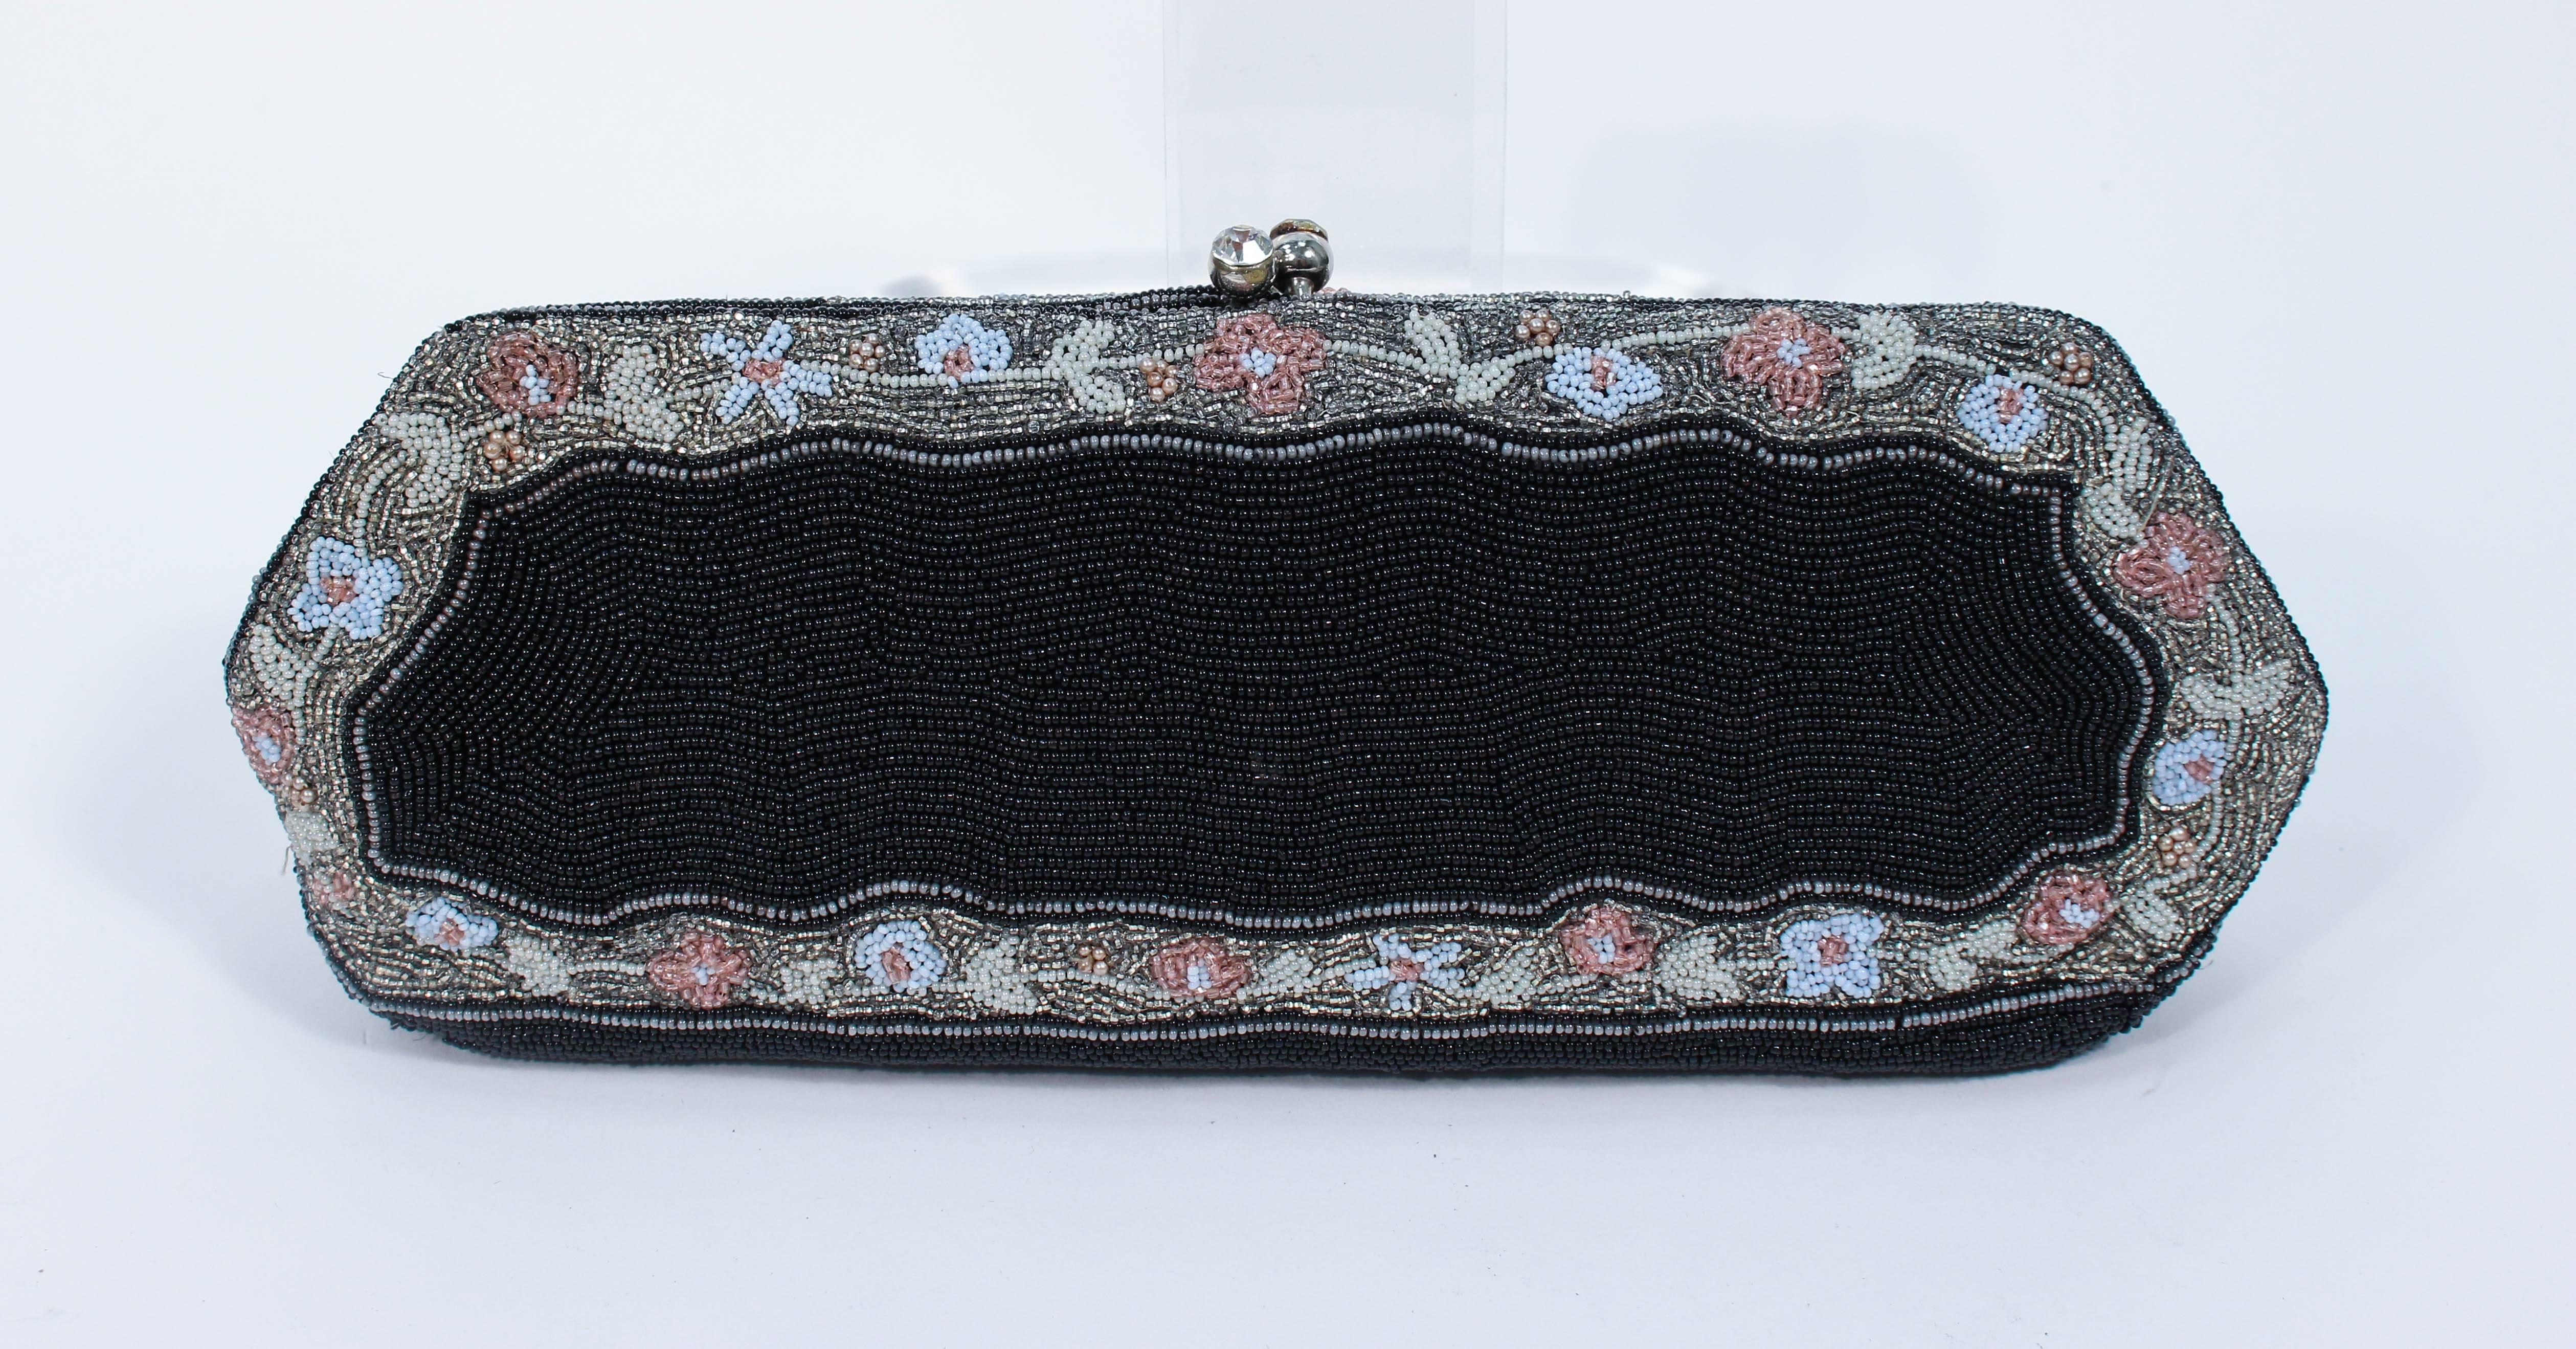 Diese Handtasche mit Perlen wurde in Belgien für Bergdorf hergestellt. Sie verfügt über ein atemberaubendes und makelloses handgearbeitetes Perlendesign mit Strasssteinverzierungen am Verschluss. Es gibt ein Innenfach mit Seidenfutter. In